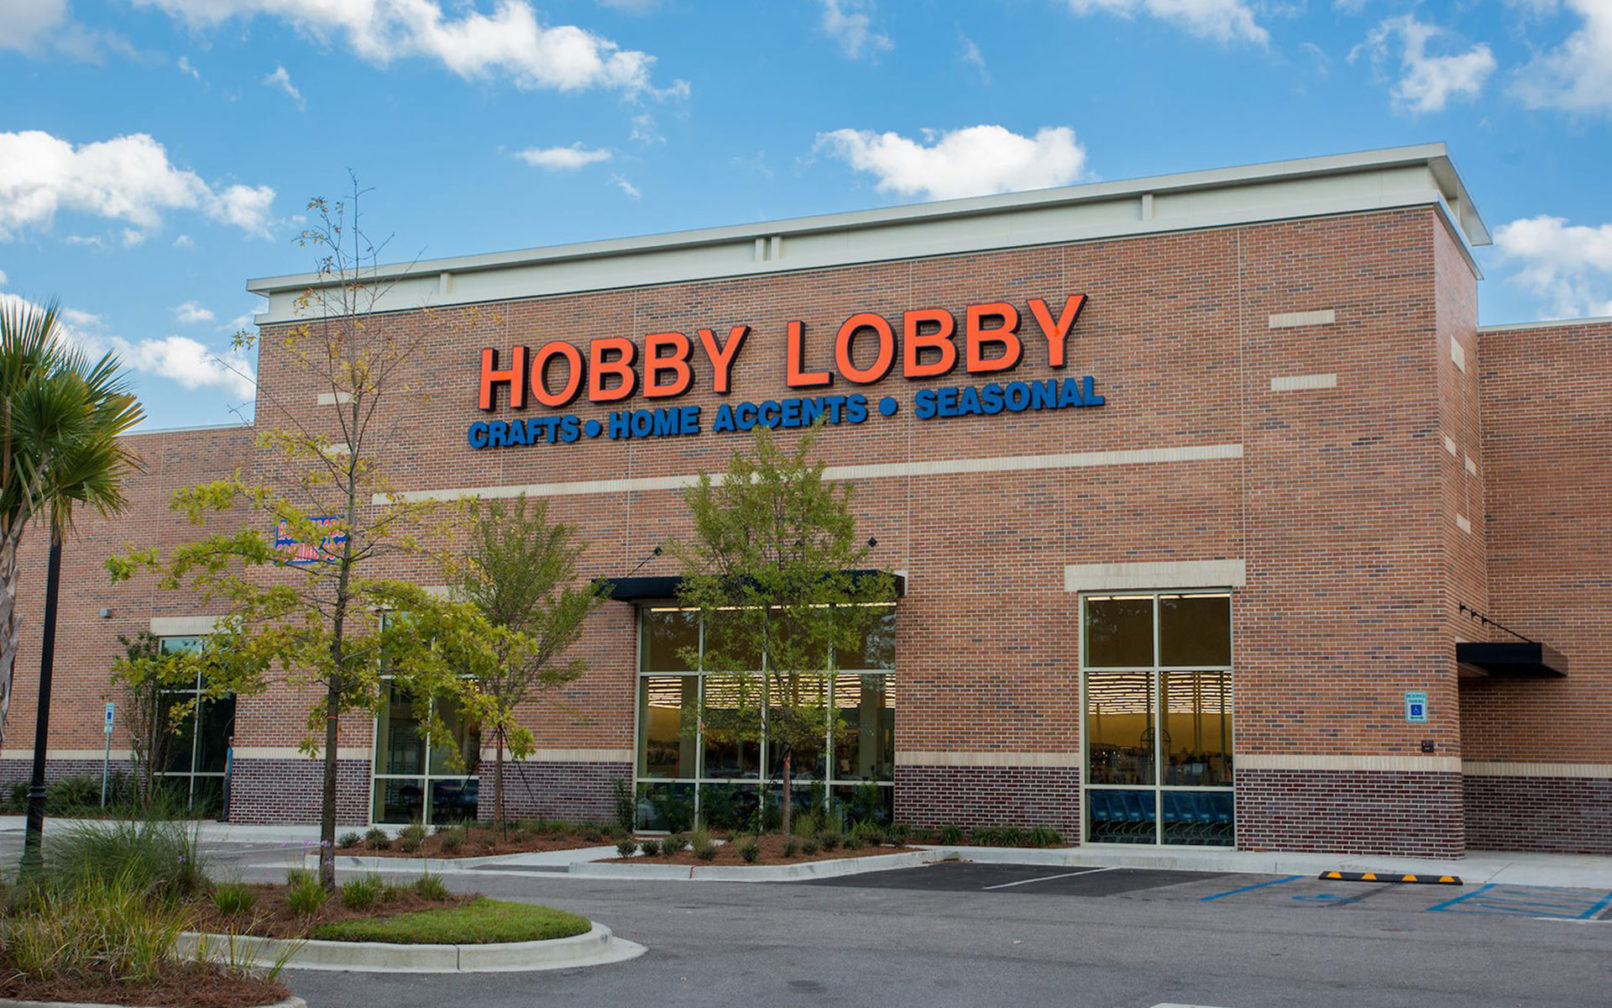 Hobby Lobby1 1612x1008 